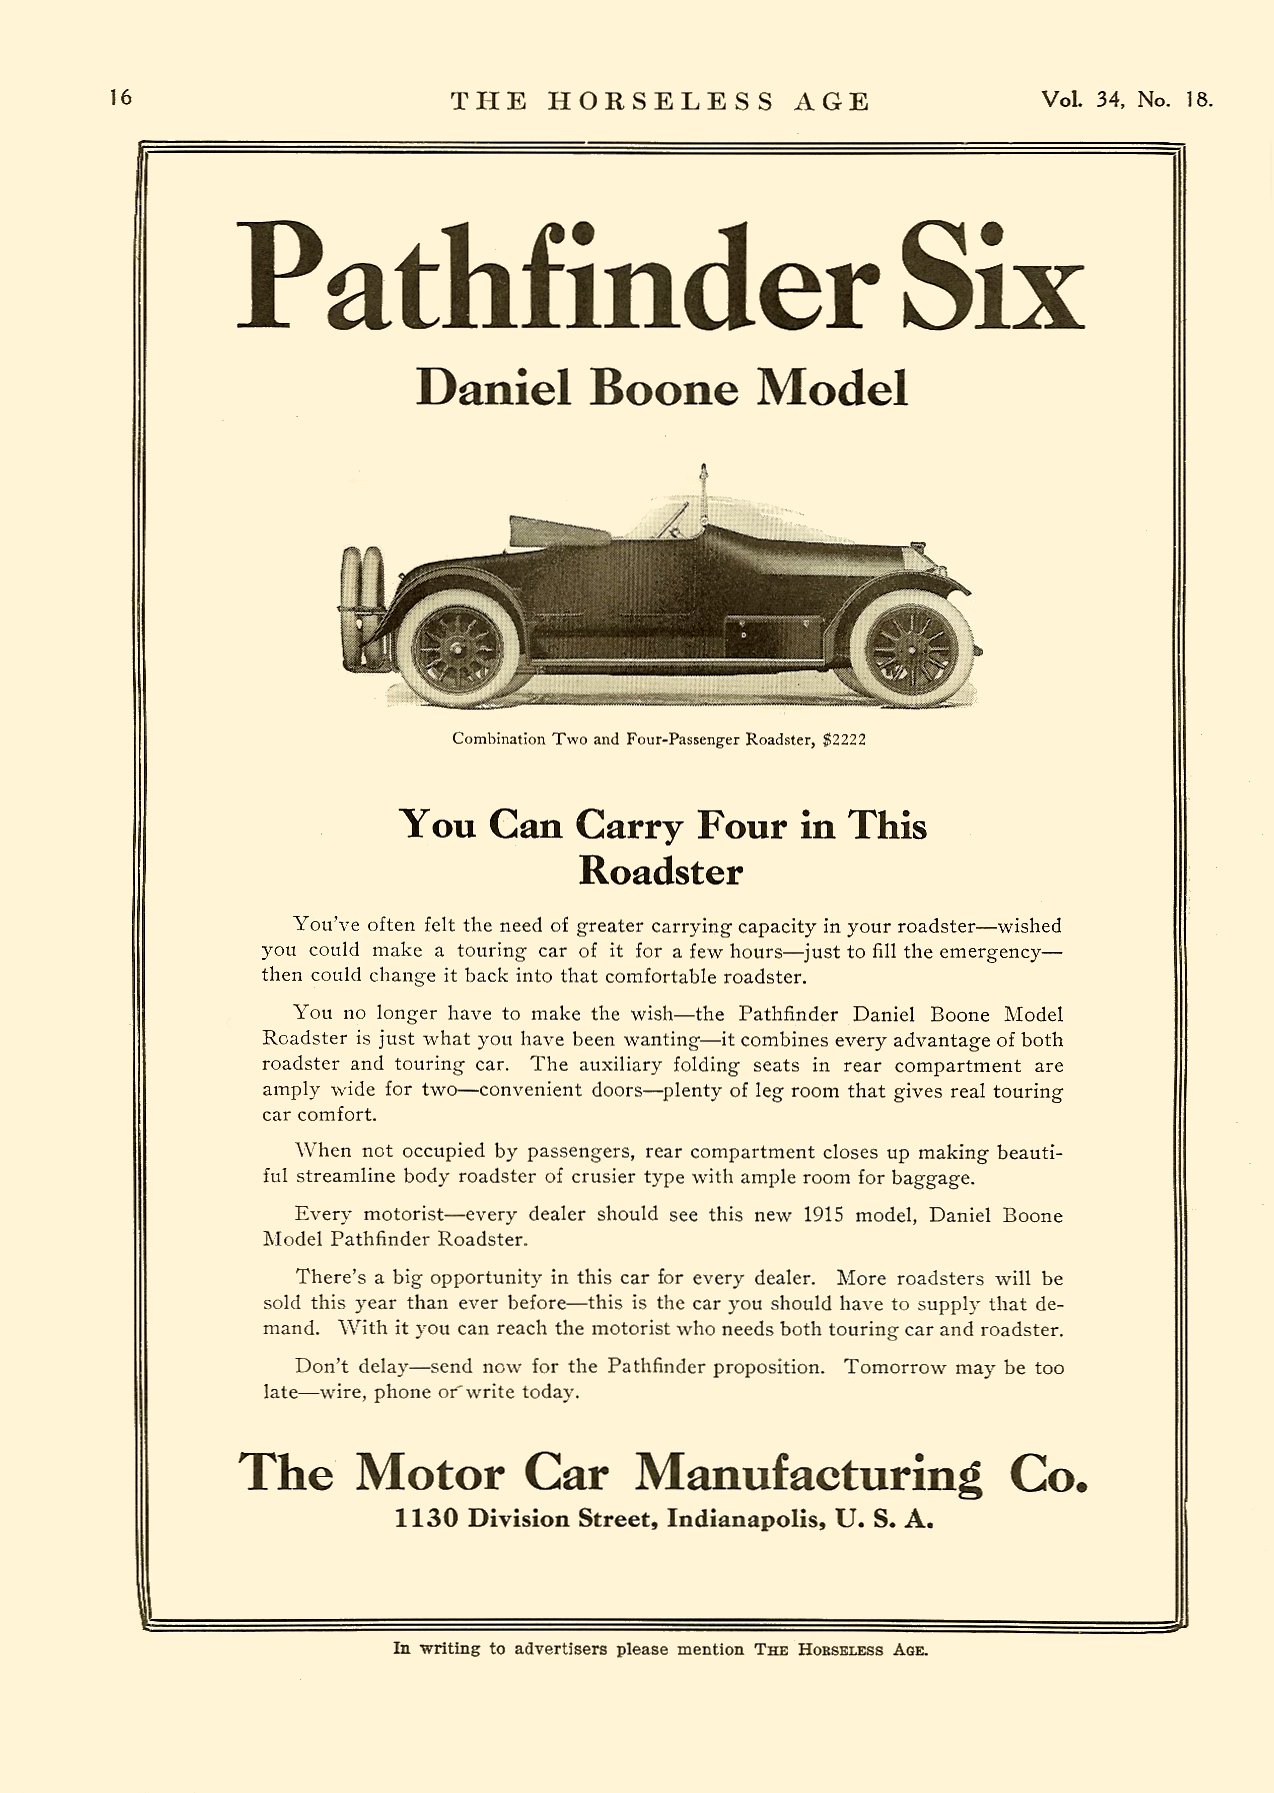 1915 Pathfinder